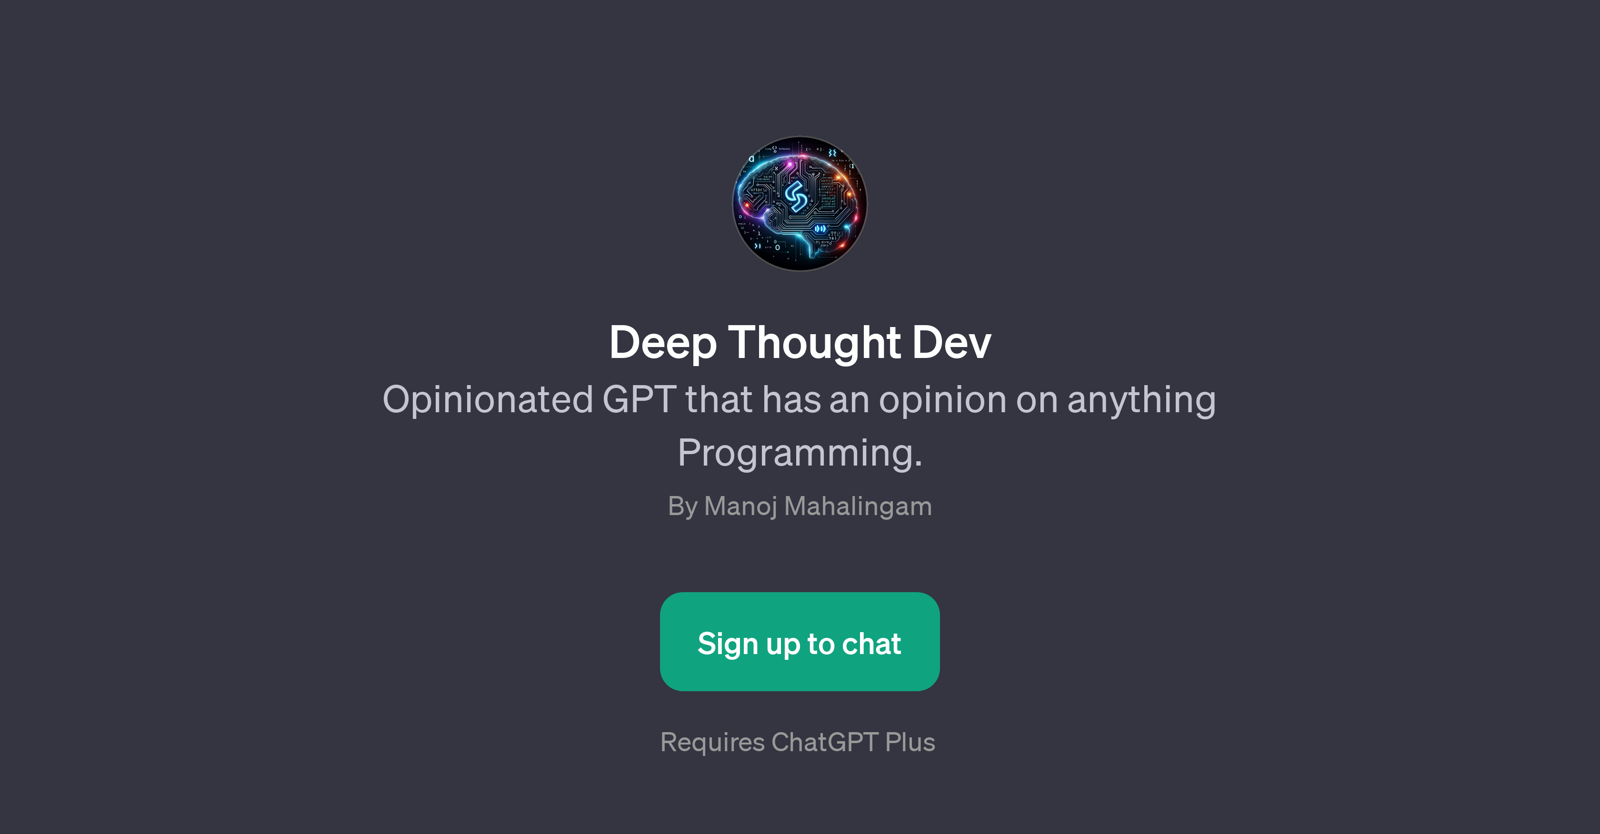 Deep Thought Dev website